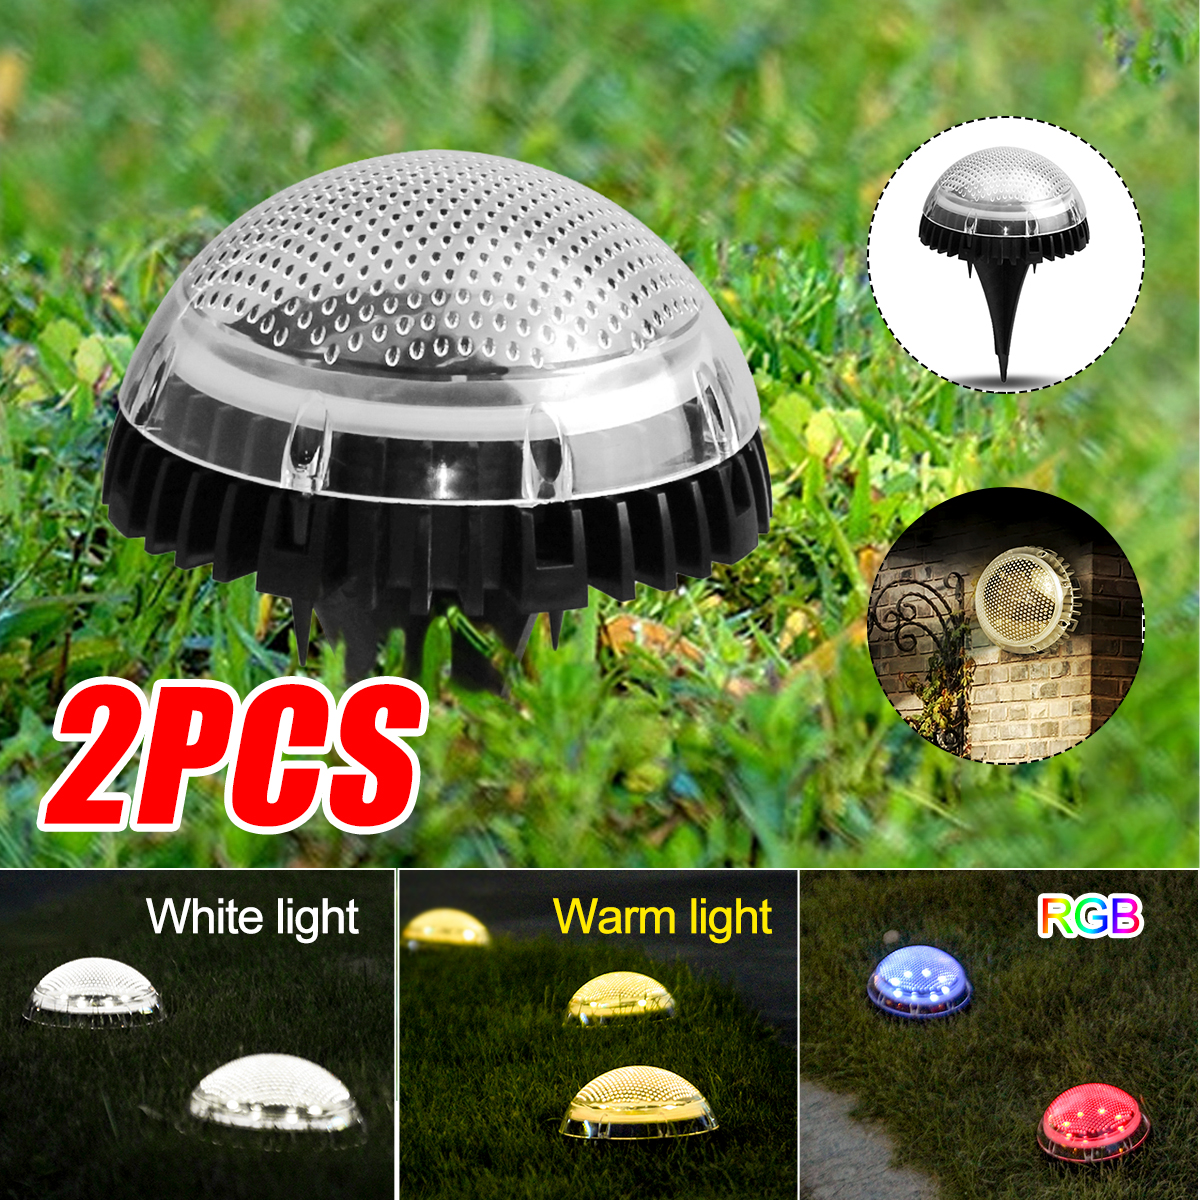 2PCS-Auto-Sensing-LED-Solar-Ball-Light-Garden-Outdoor-Patio-Lawn-Path-Lamp-For-Home-Decor-1770112-1